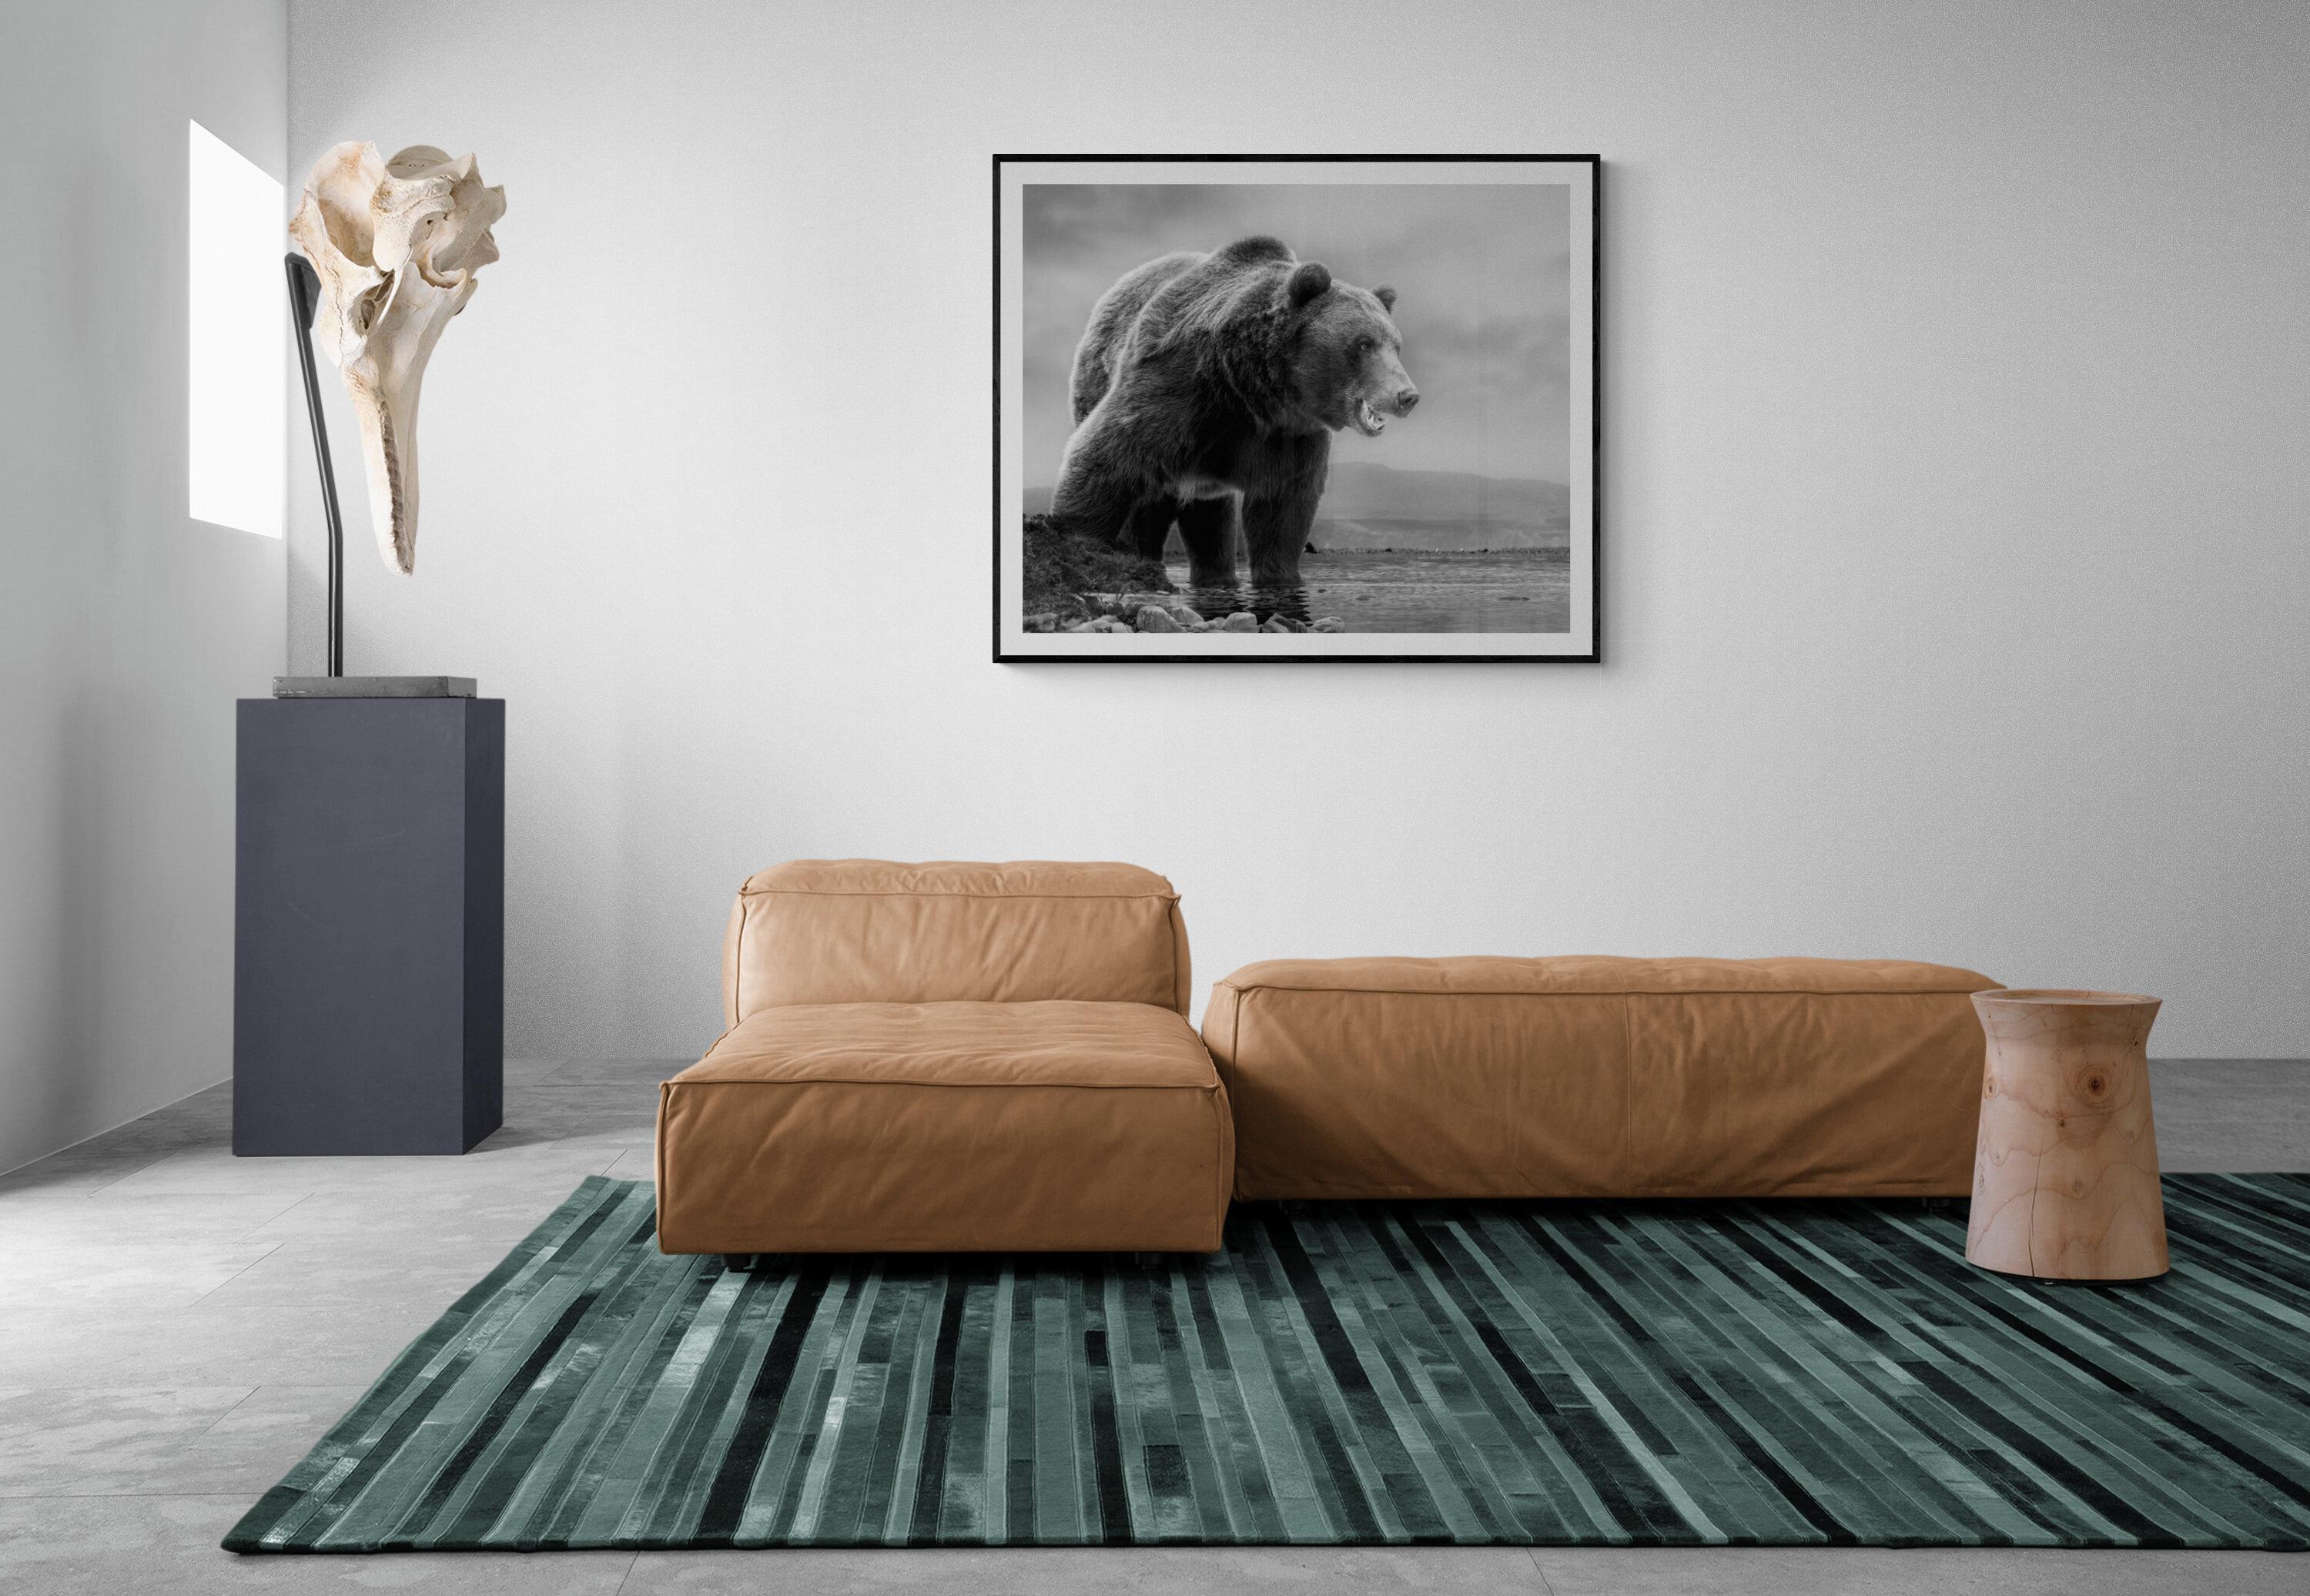 Dies ist eine zeitgenössische Fotografie eines Kodiakbären.  
Dies wurde 2019 auf Kodiak Island gedreht. 
36x48 
Vorzeichenlos 
Archivalisches Pigmentpapier
Einrahmung verfügbar. Erkundigen Sie sich nach den Preisen. 


Shane Russeck hat sich den